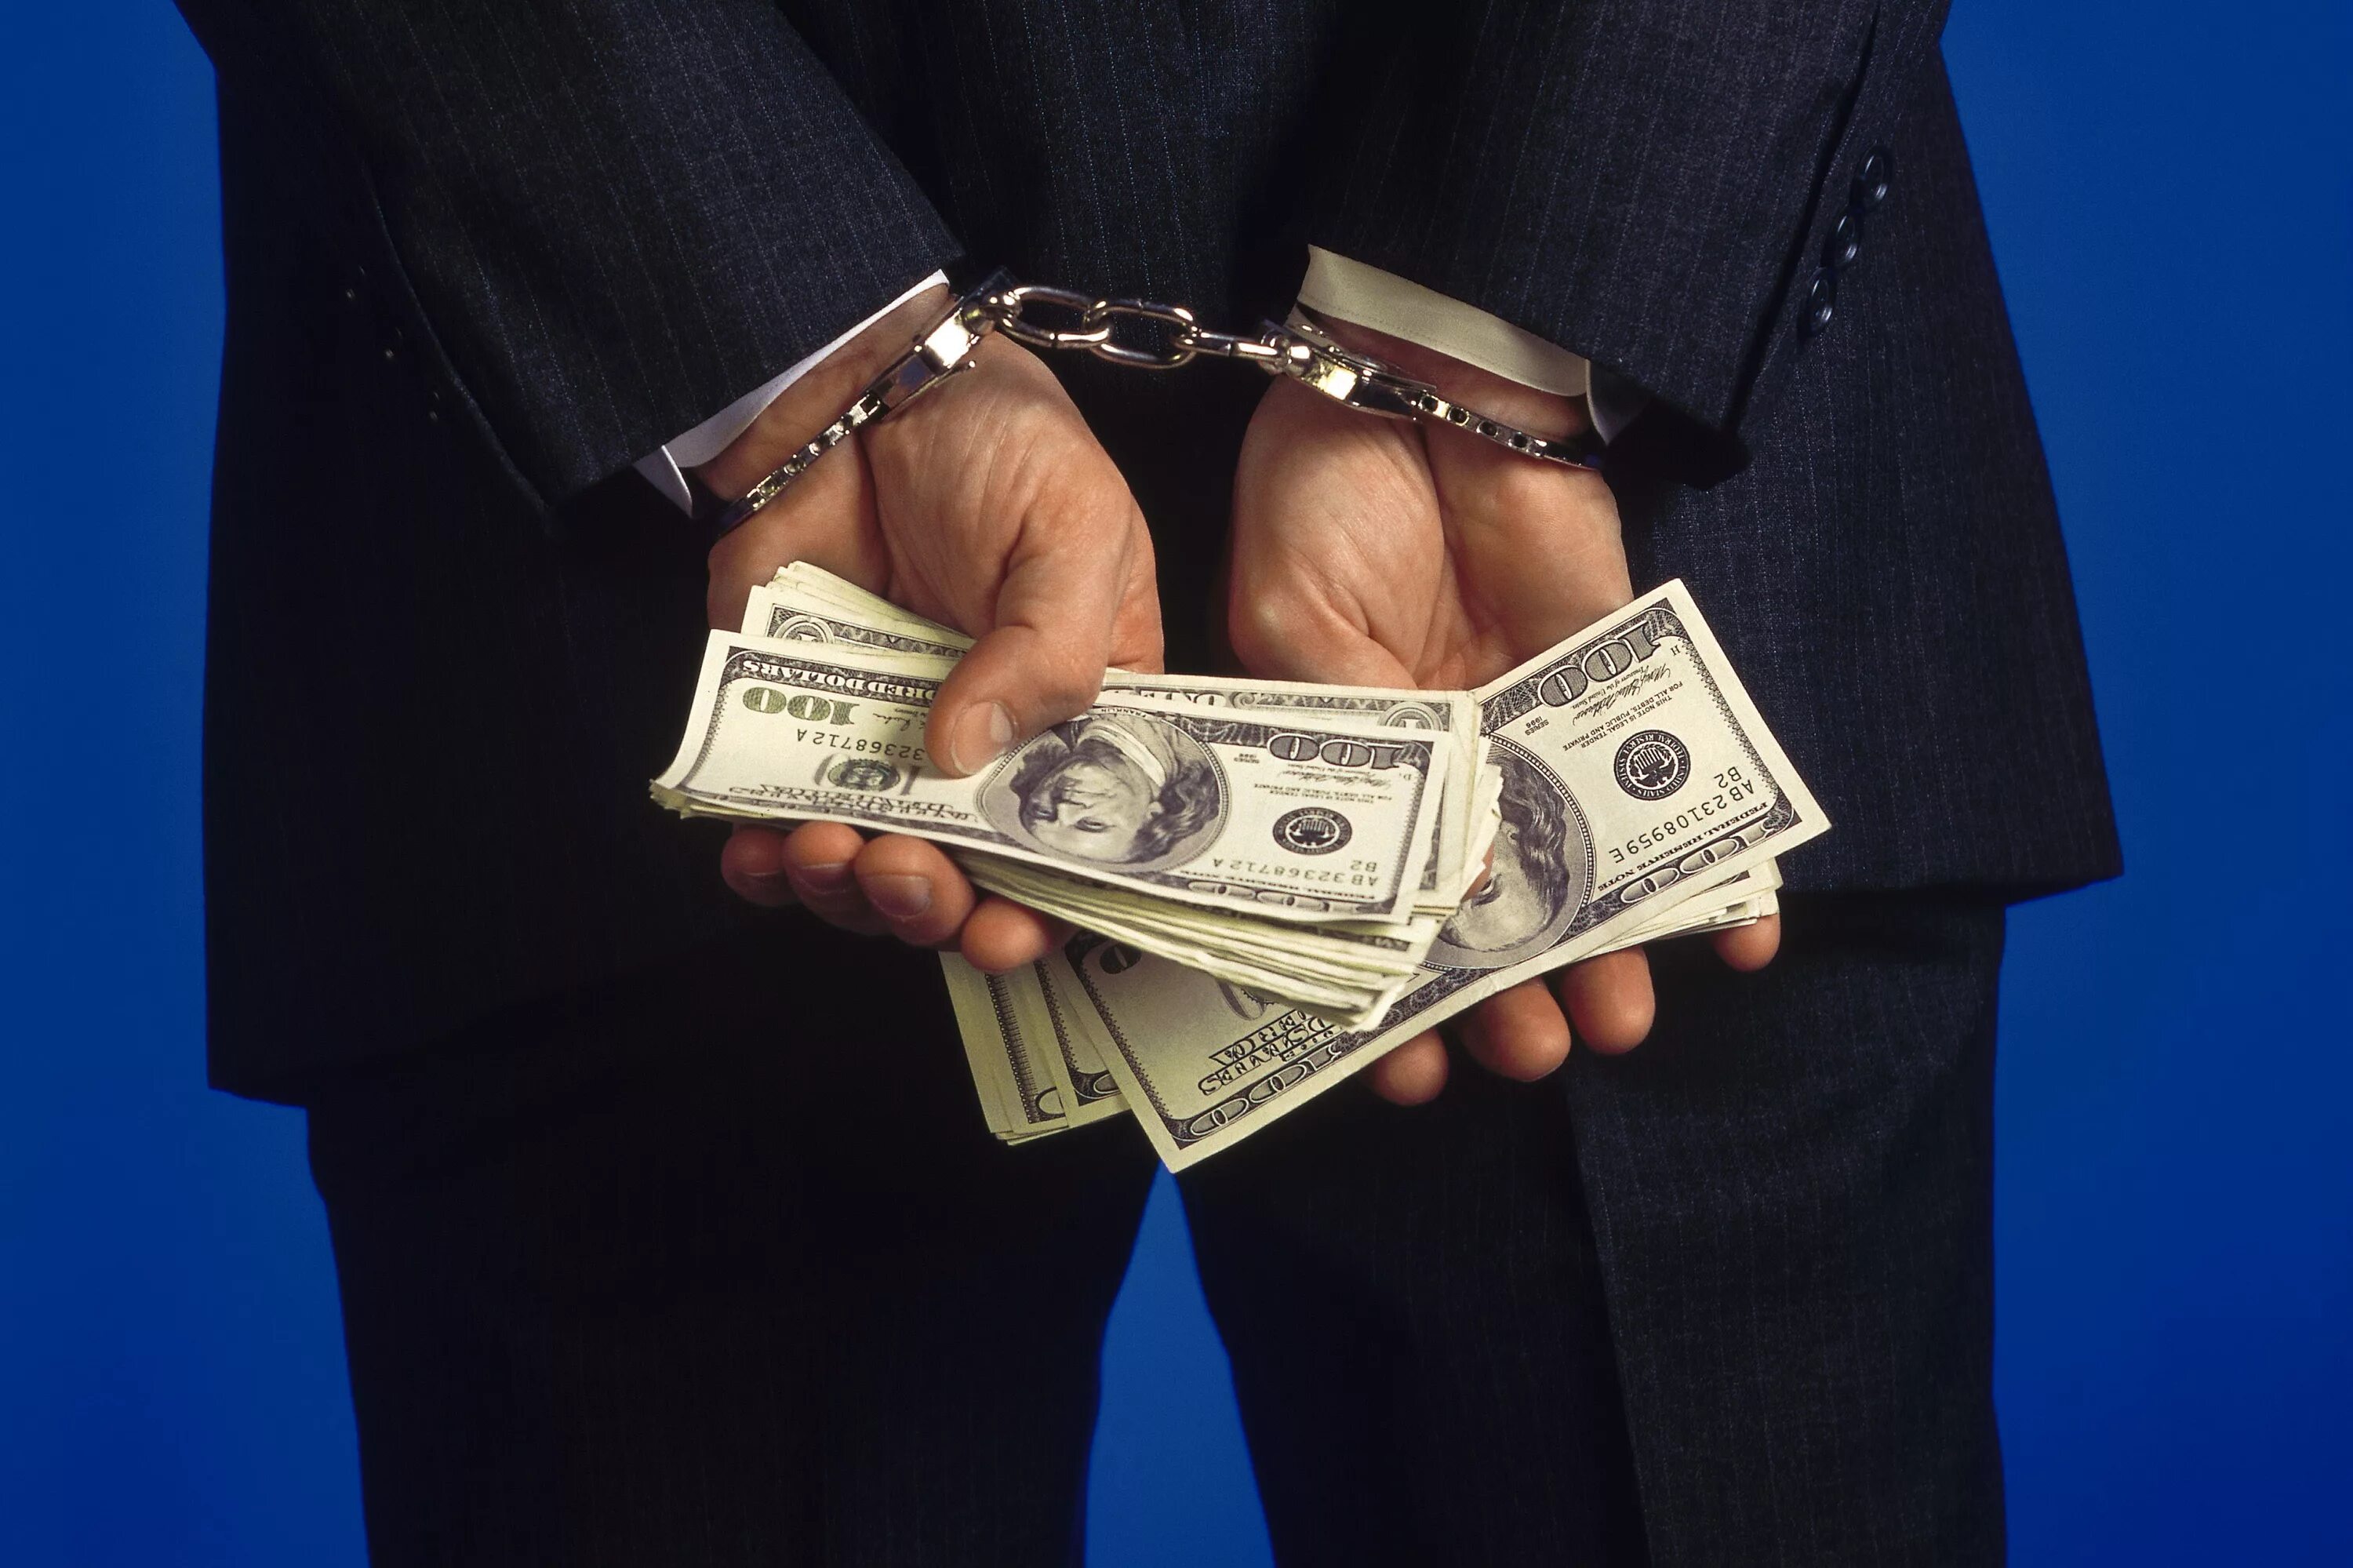 Руки в наручниках с деньгами. Коррупция. Коррупционная преступность. Мошенничество отмывание денег